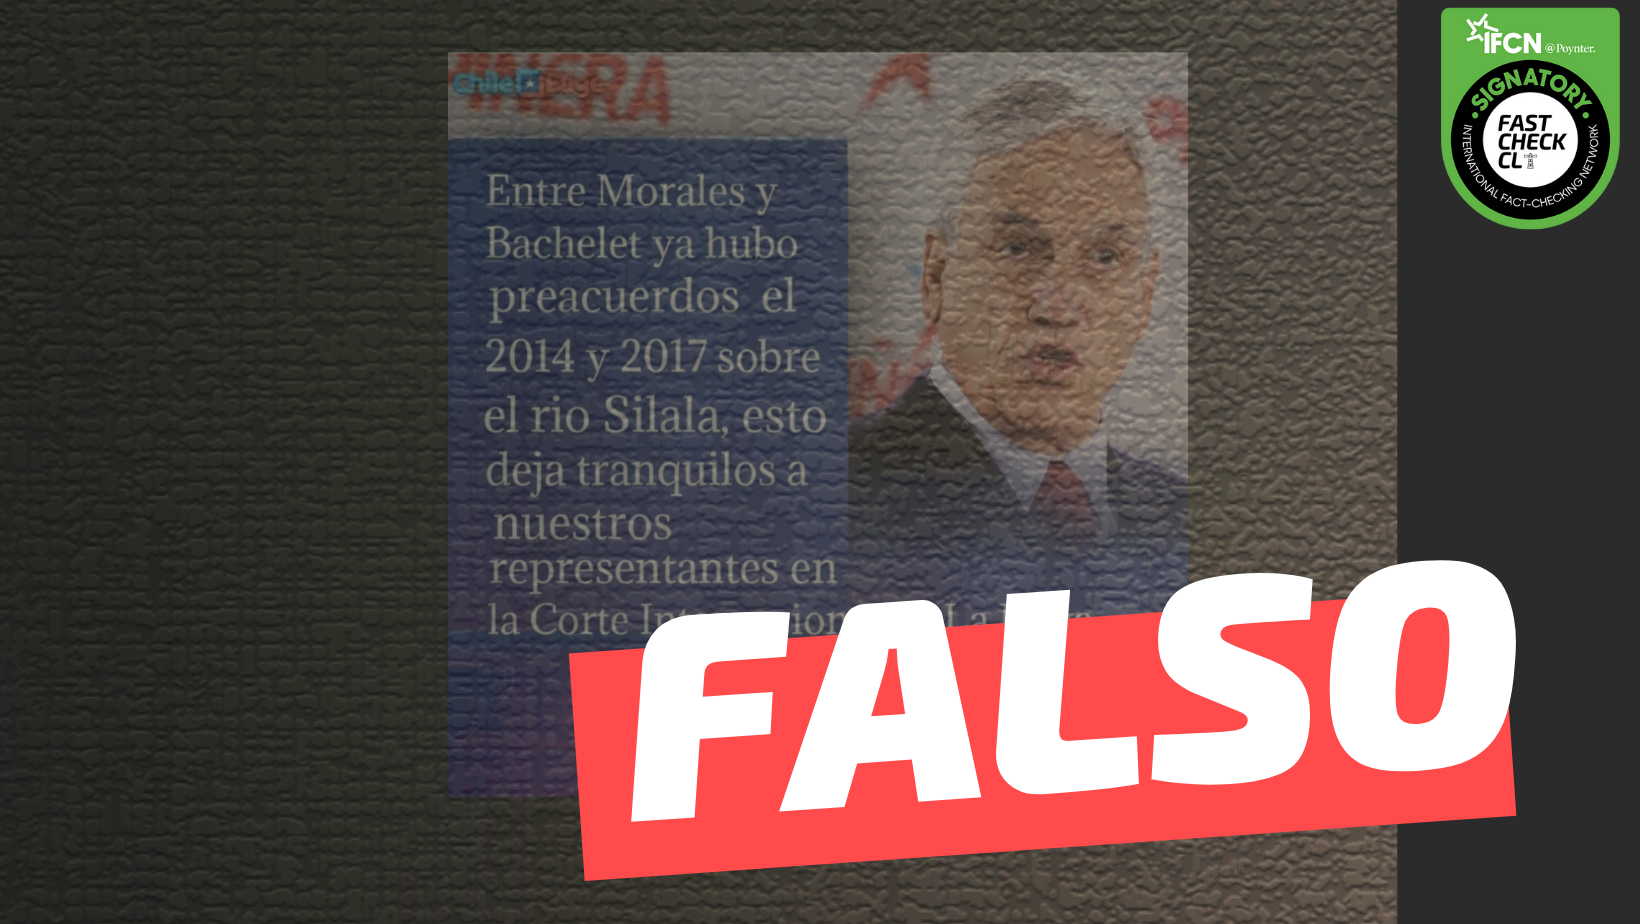 You are currently viewing (Imagen) Sebastián Piñera: “Entre Morales y Bachelet ya hubo preacuerdos el 2014 y 2017 sobre el río Silala”: #Falso